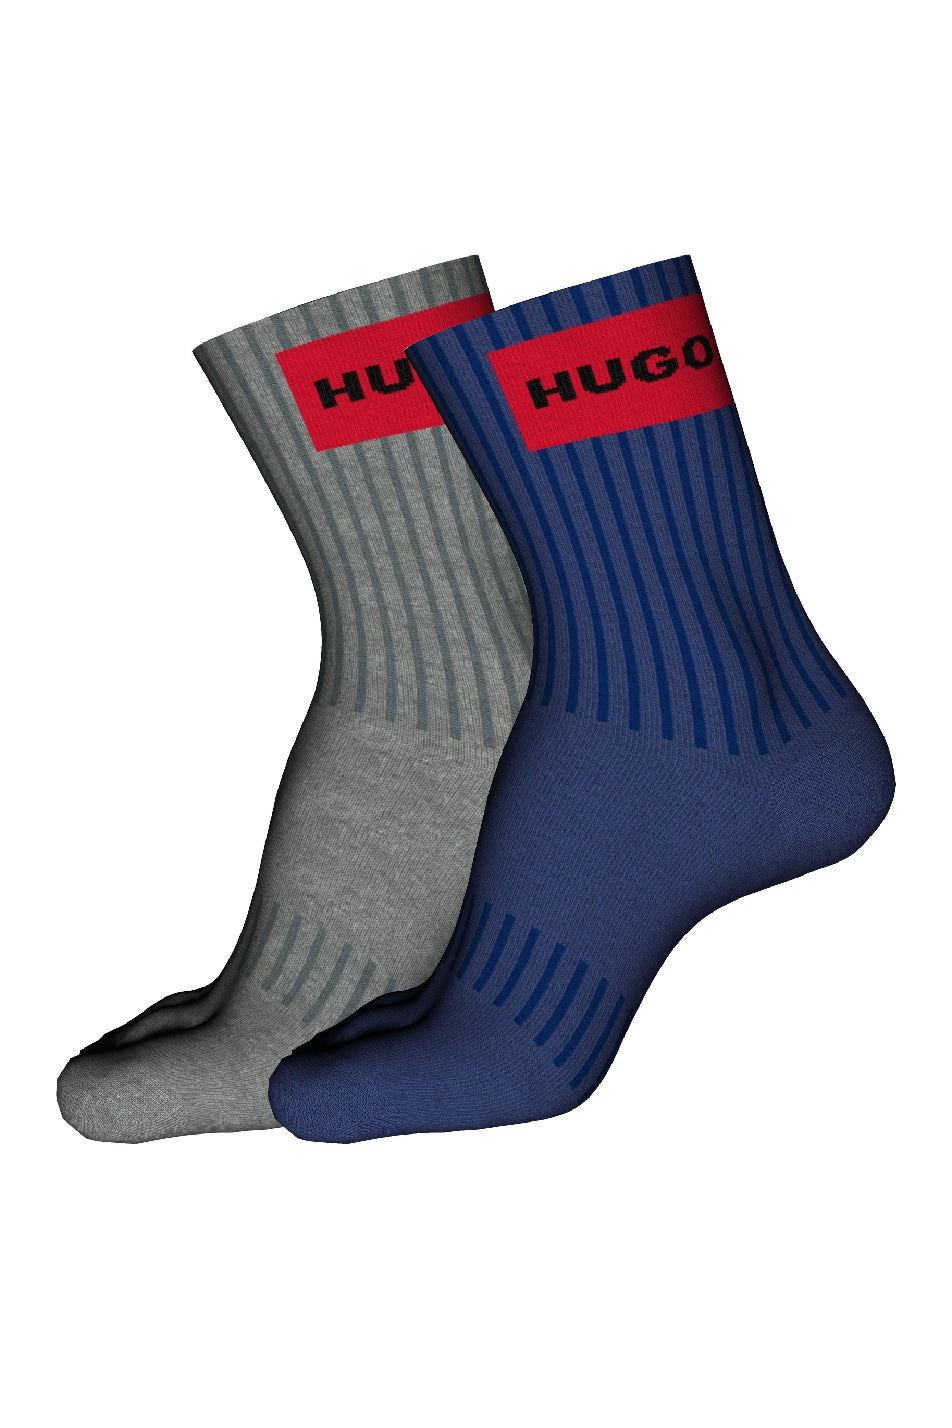 Hugo 2 Pack Men's Sock